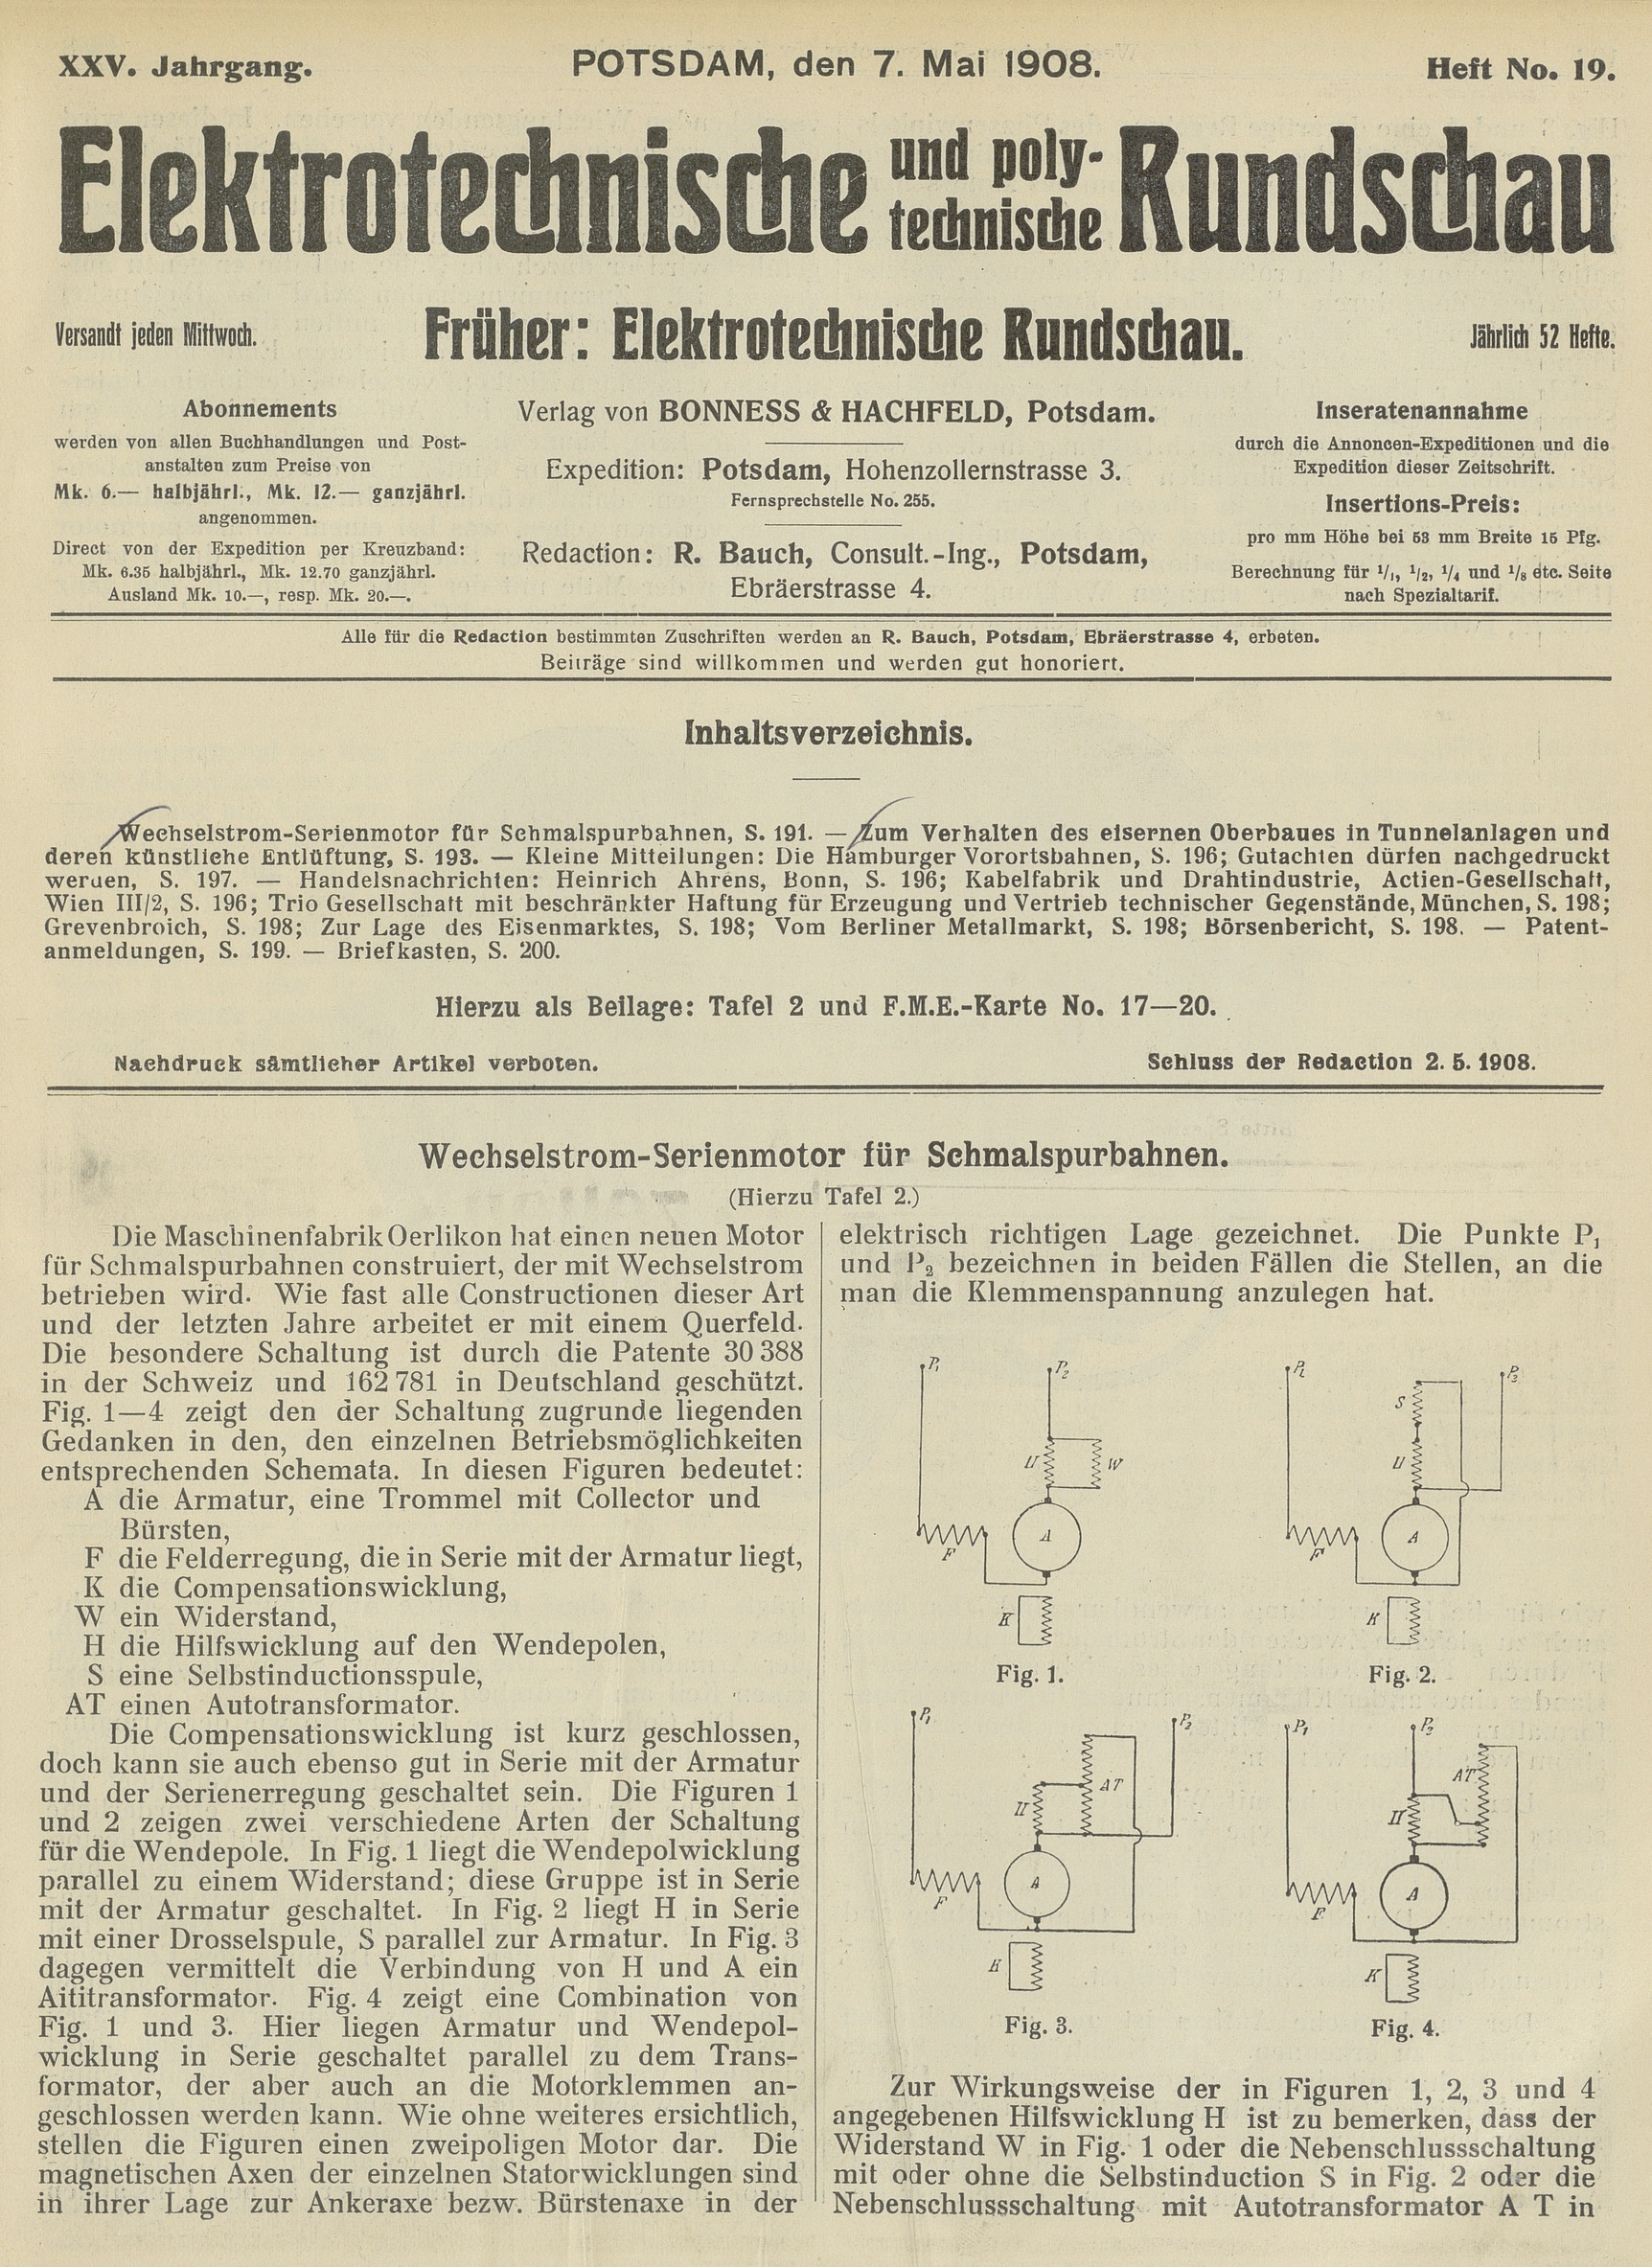 Elektrotechnische und polytechnische Rundschau, XXV. Jahrgang, Heft No. 19